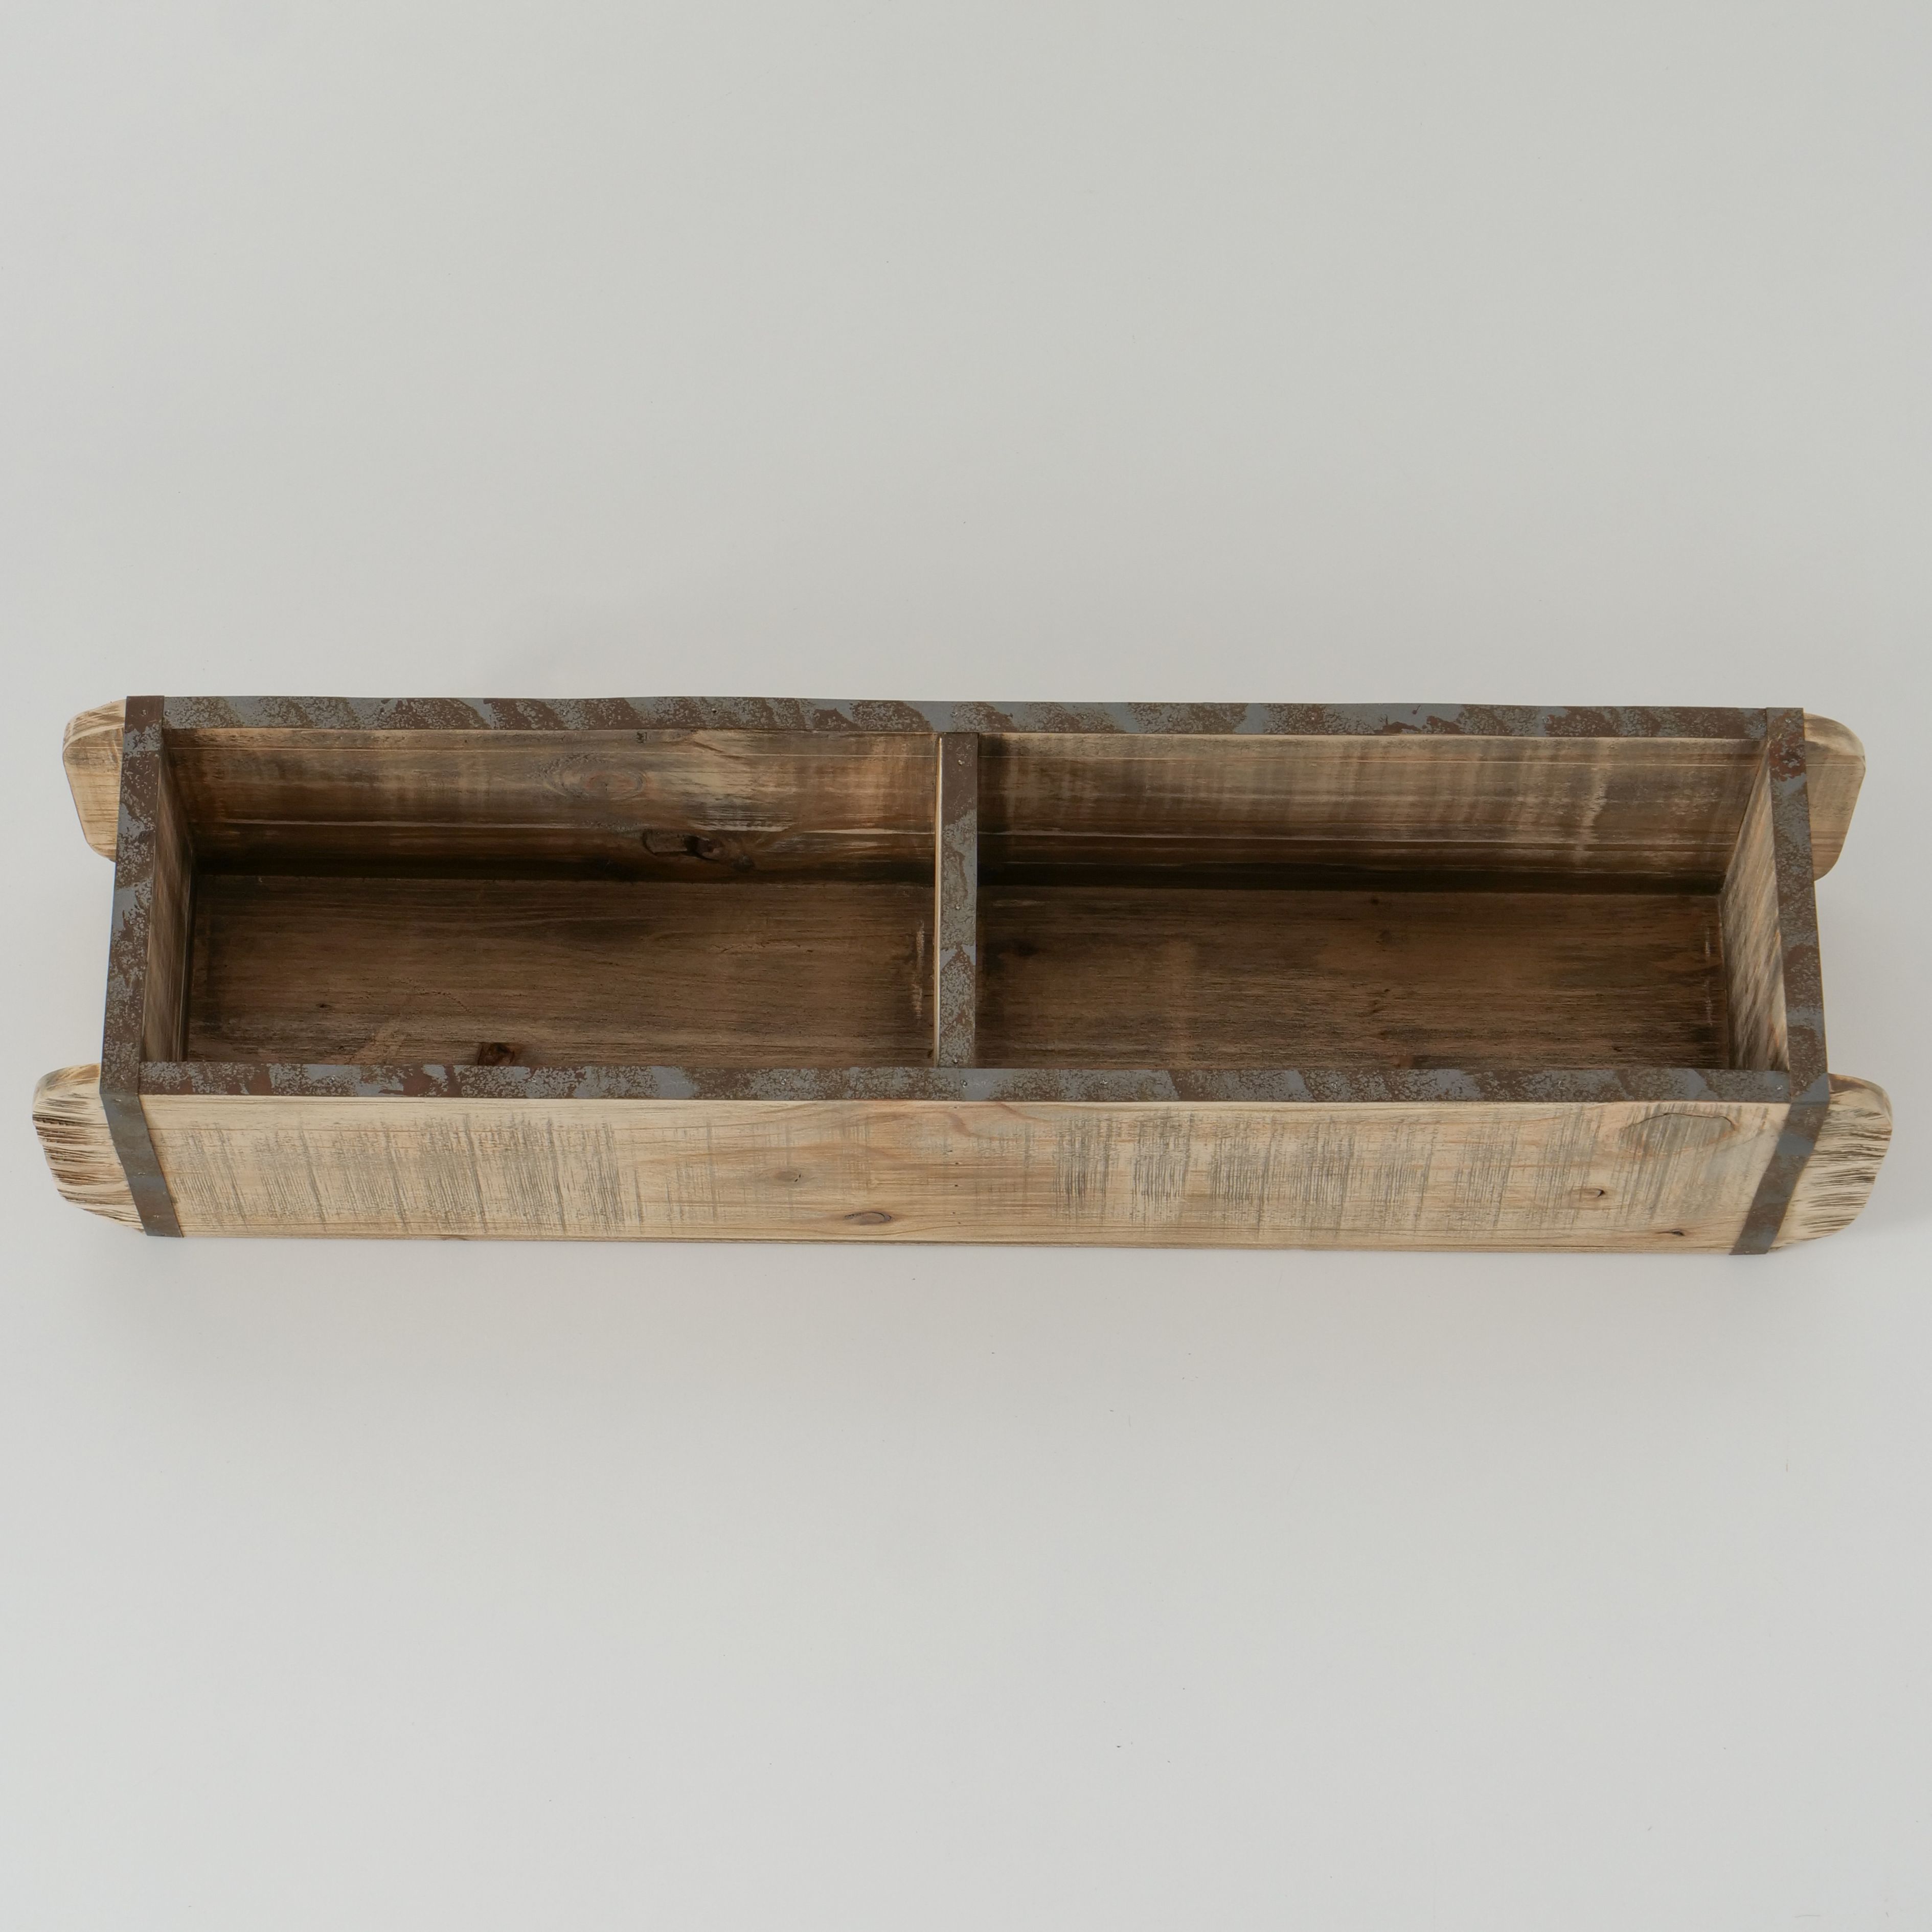 Holz Hänge Regal - 75x18cm, Tischregal, Lade, Ziegelform